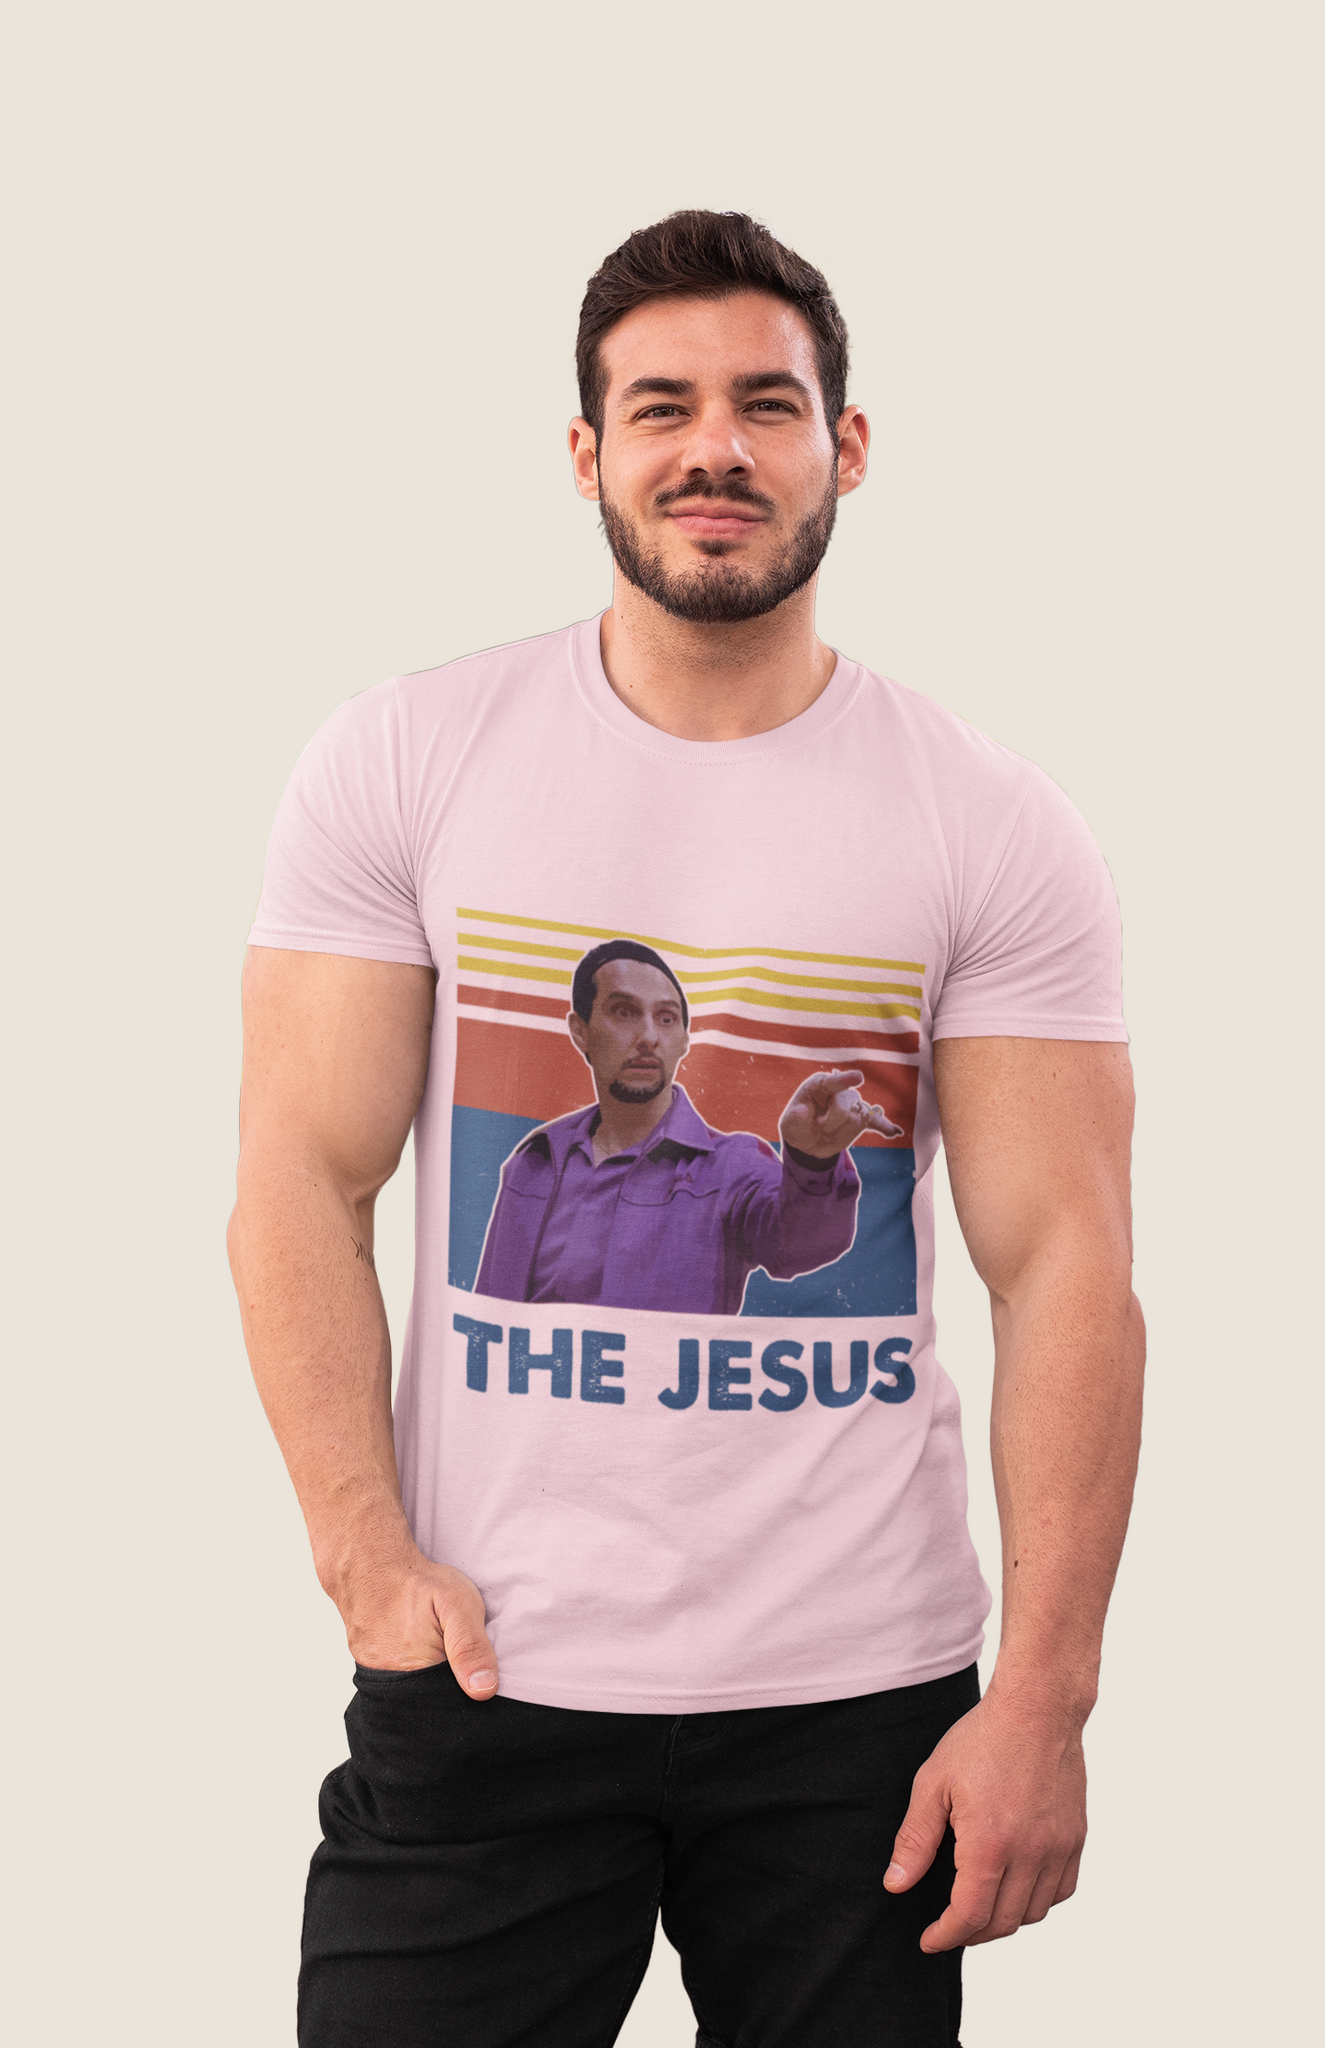 The Big Lebowski T Shirt, Jesus Quintana T shirt, The Jesus Vintage Tshirt